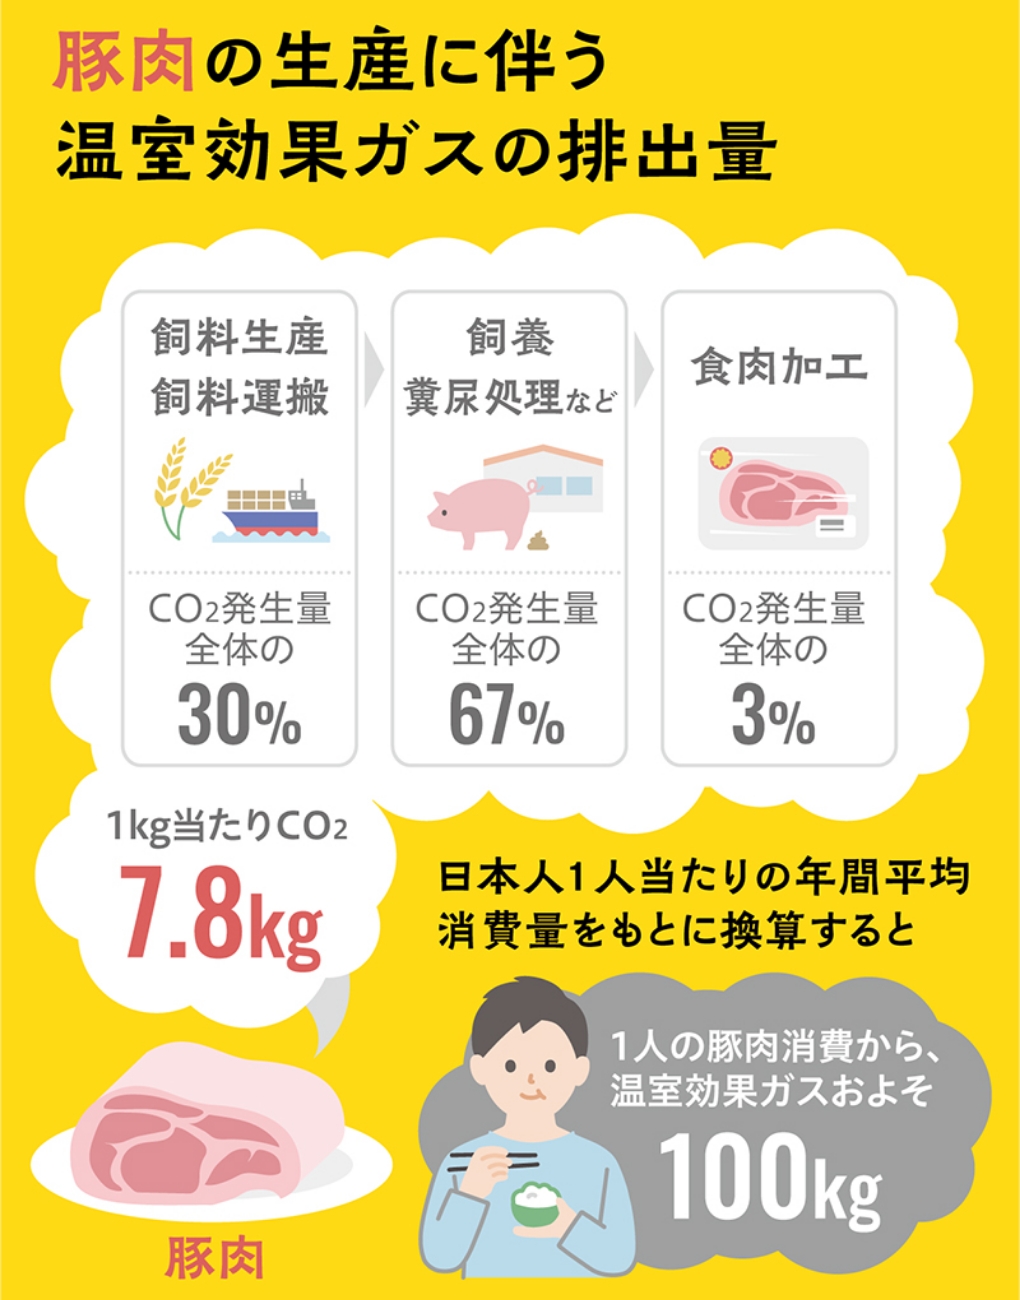 豚肉の生産に伴う温室効果ガスの排出量